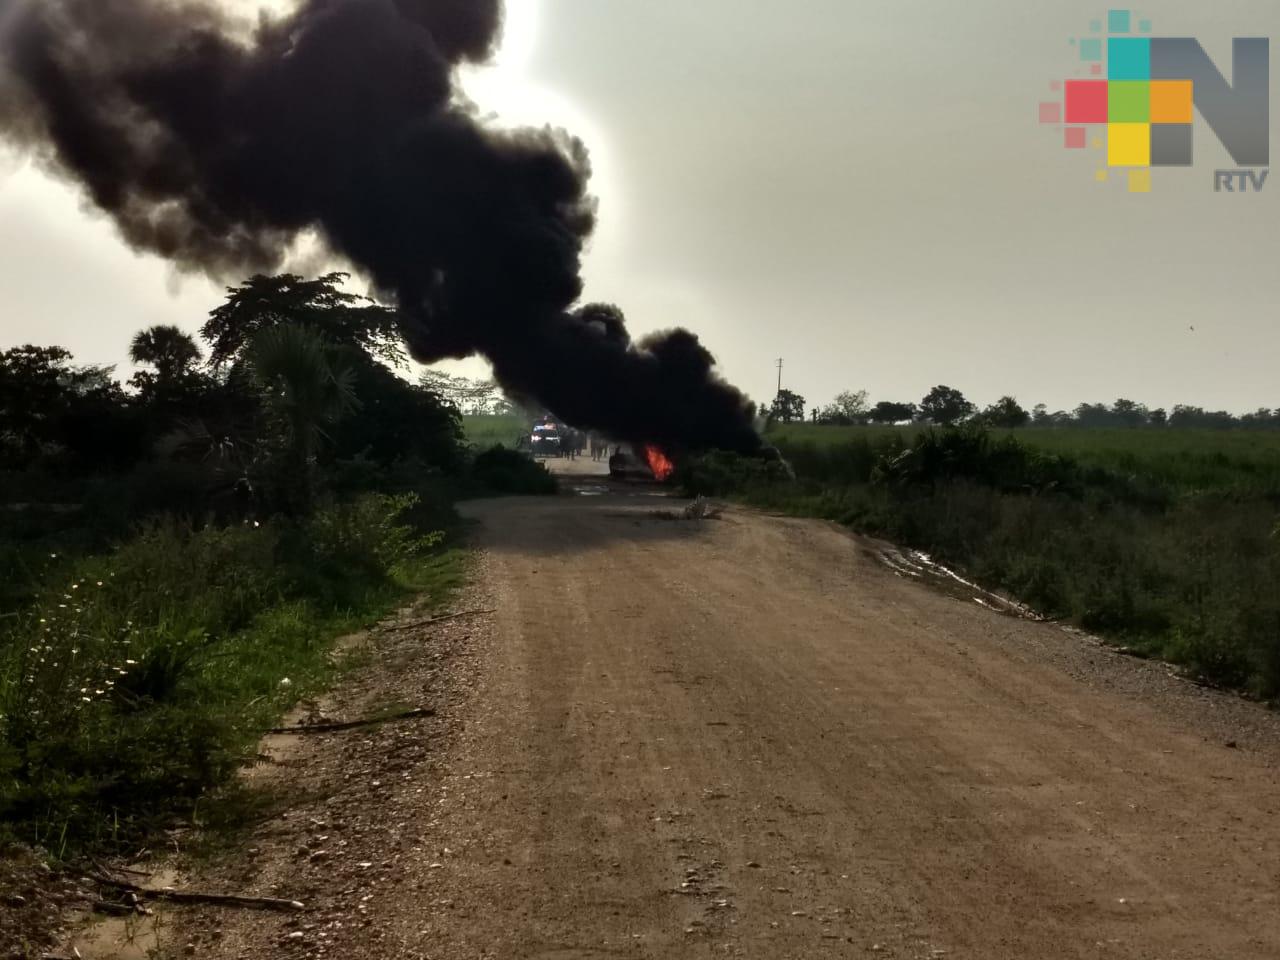 Confirma PC que explosión en Cosamaloapan se registró en zona de ducto de Pemex